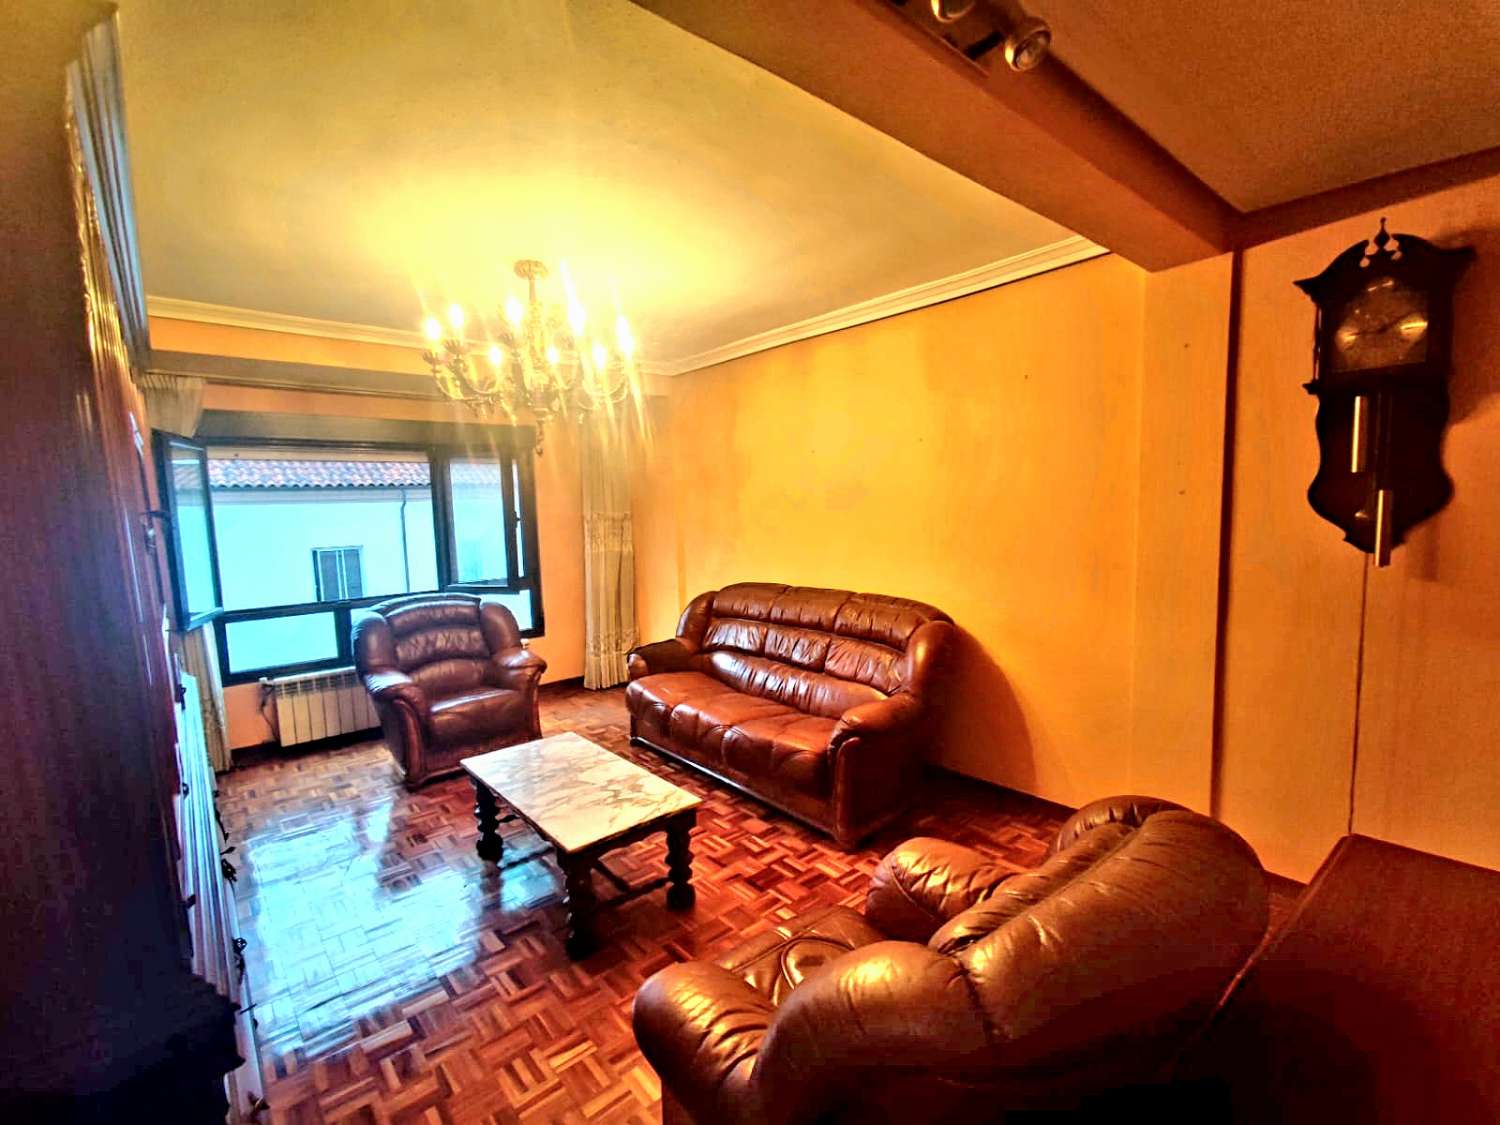 شقة 3 غرف نوم مع مرآب وغرفة تخزين في منطقة ستو دومينغو